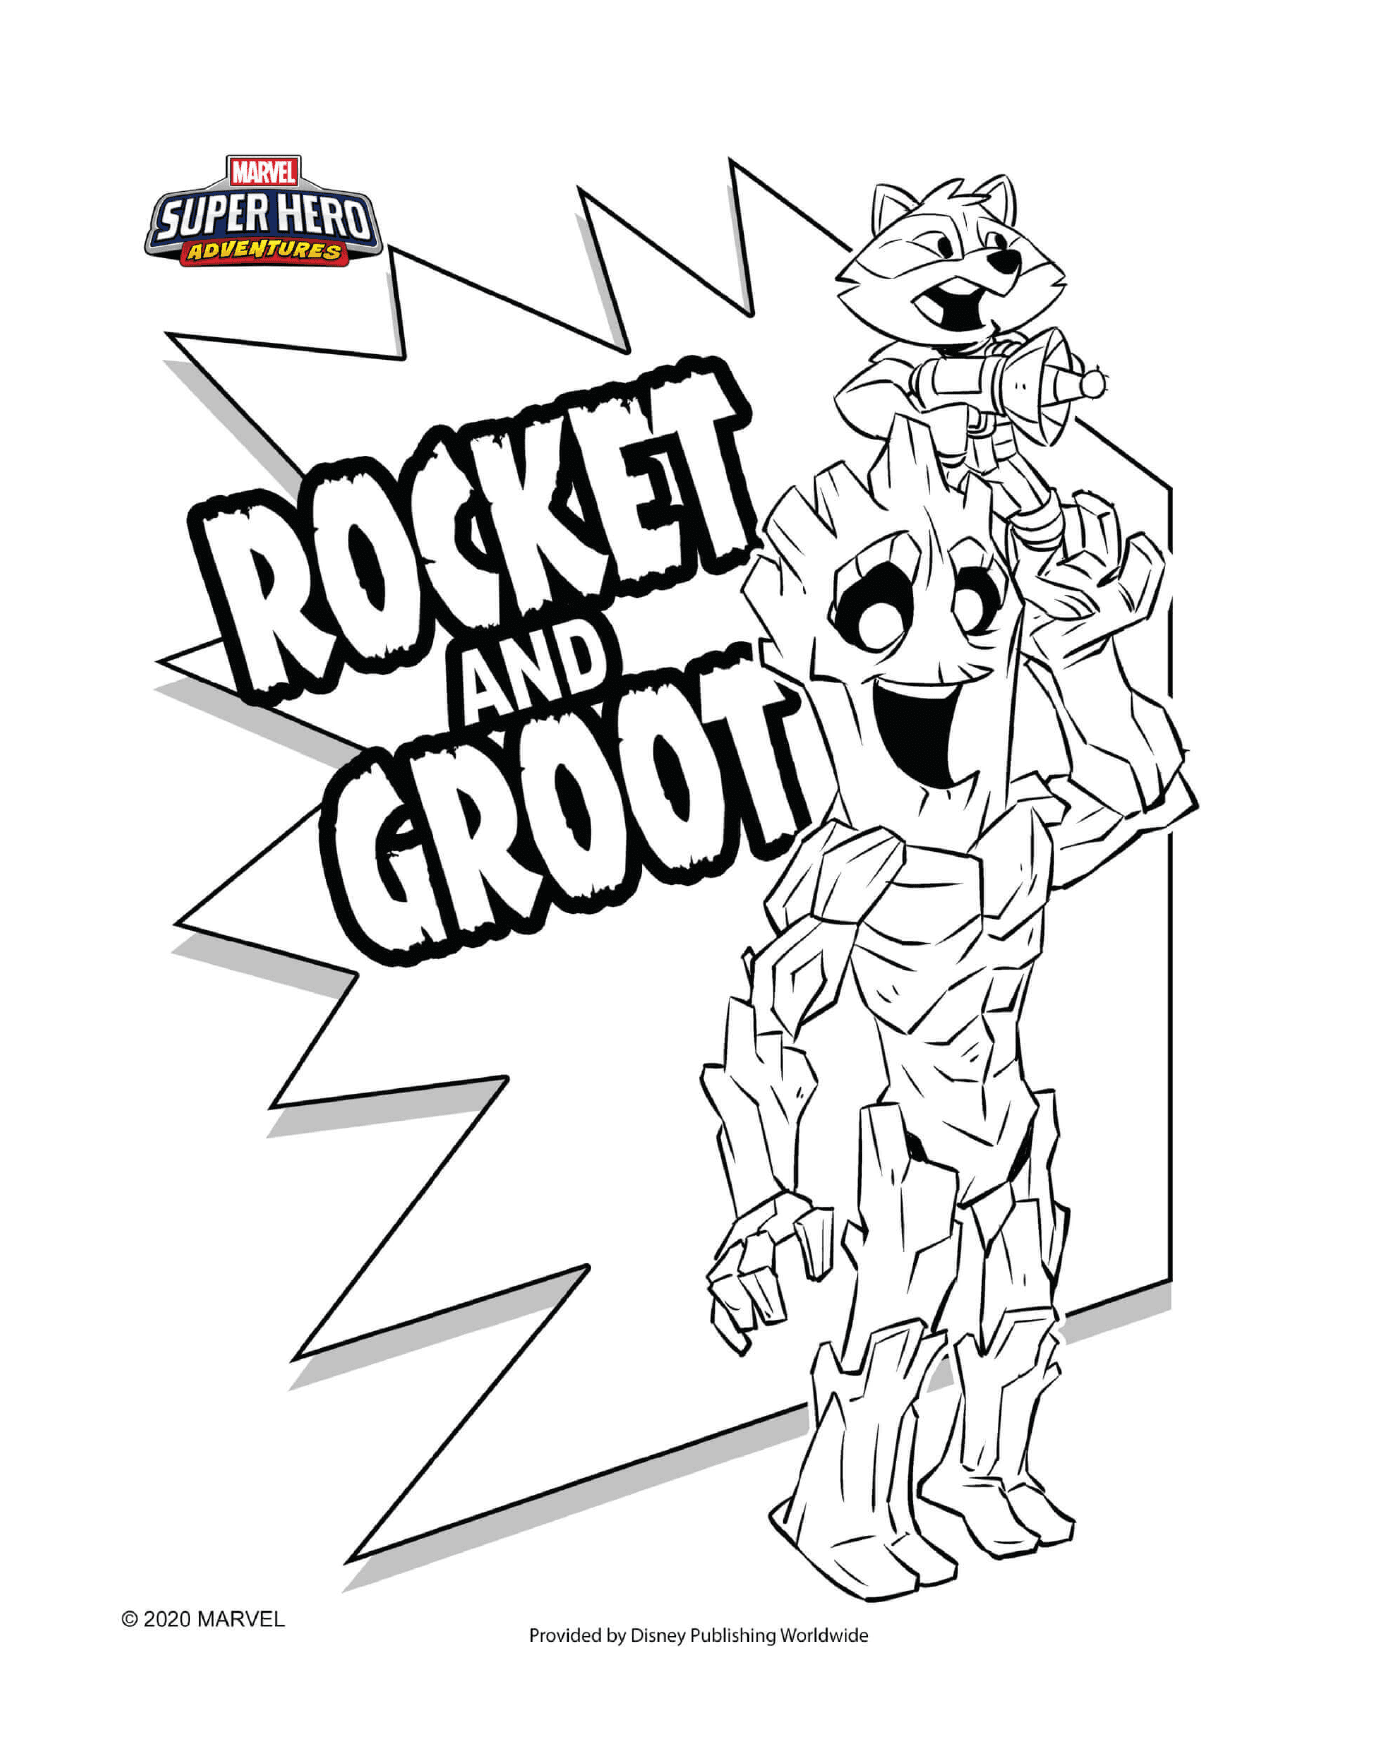   Rocket et Groot, des super-héros 